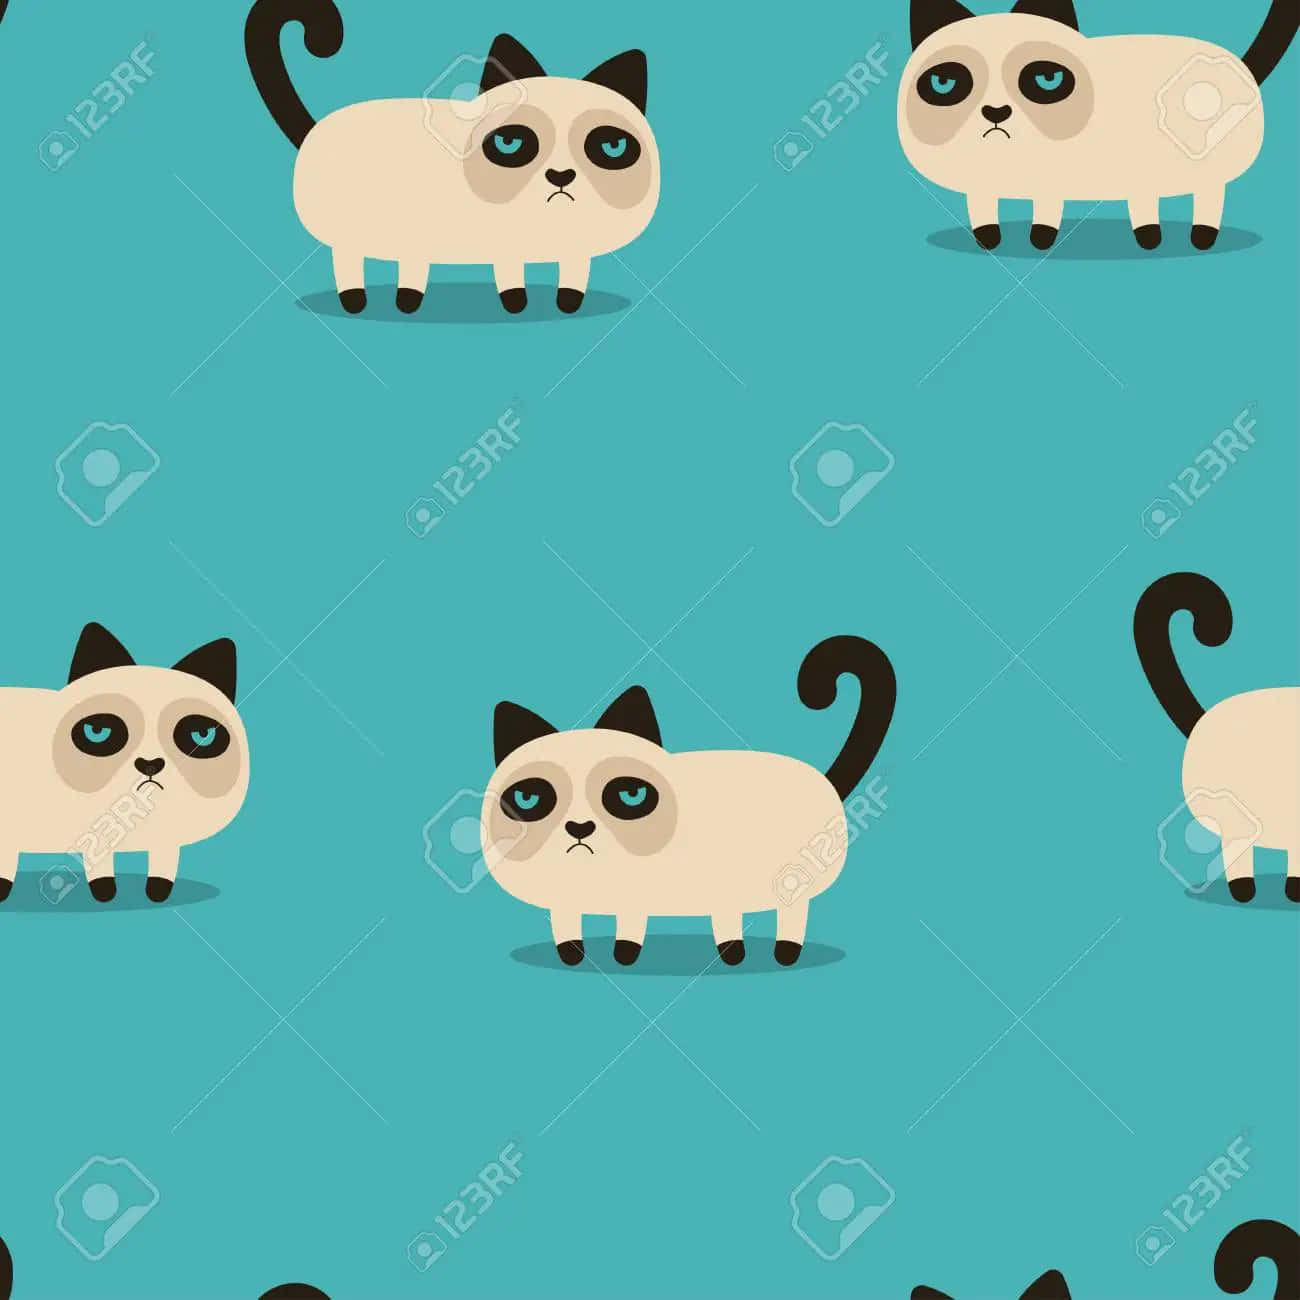 Adorable Grumpy Cat Wallpaper